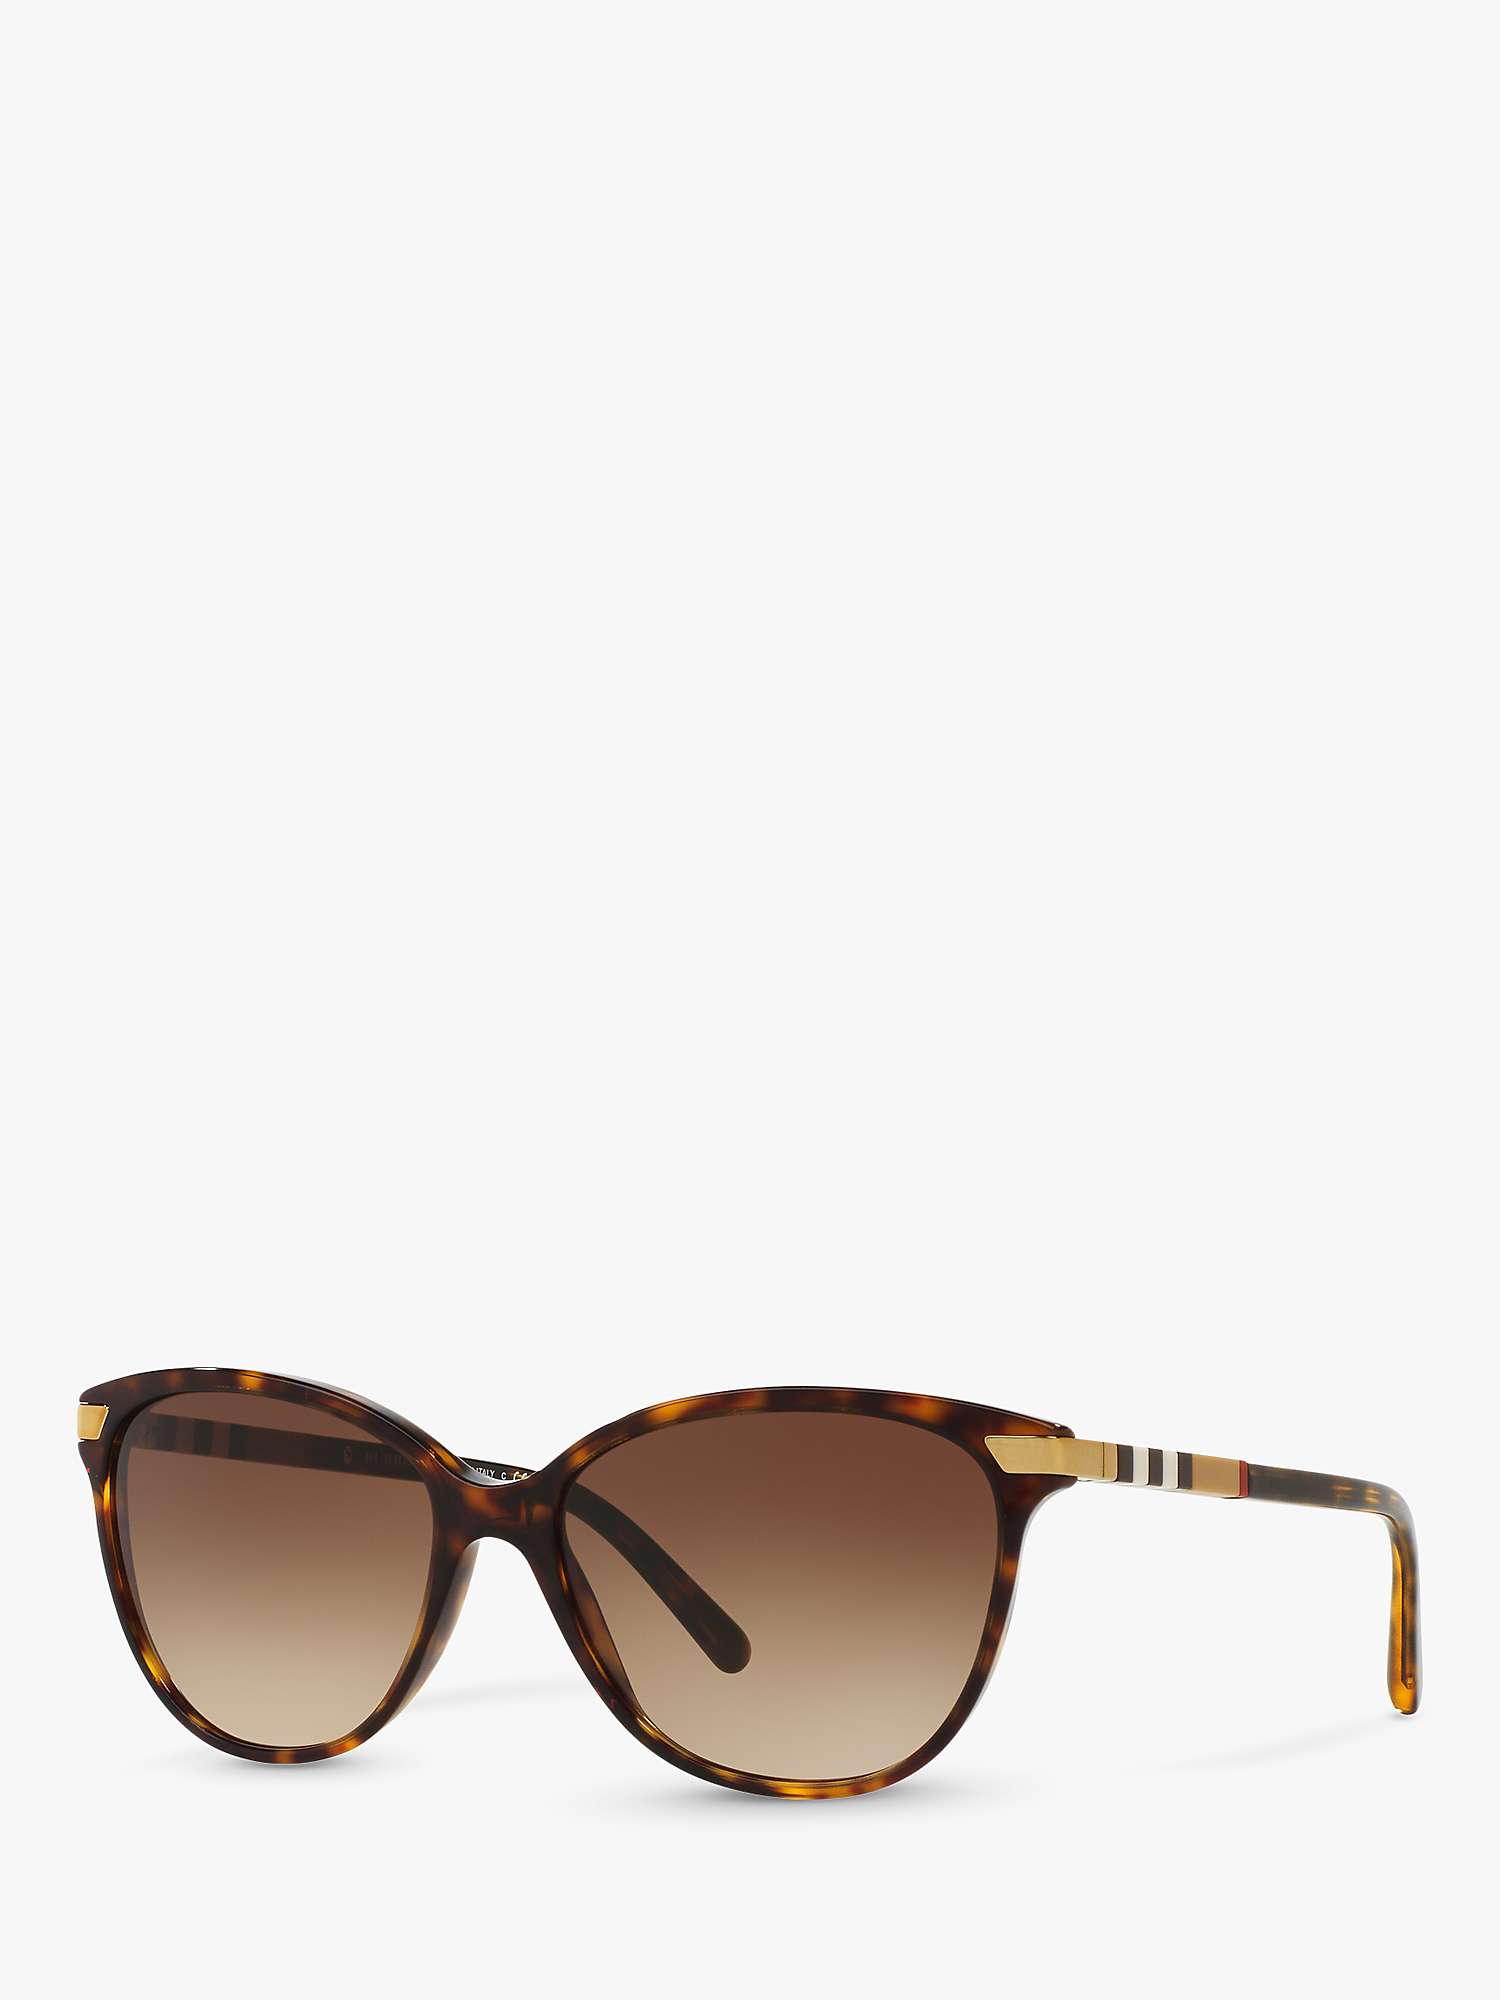 Buy Burberry BE4216 Women's Cat's Eye Sunglasses, Dark Havana/Brown Gradient Online at johnlewis.com